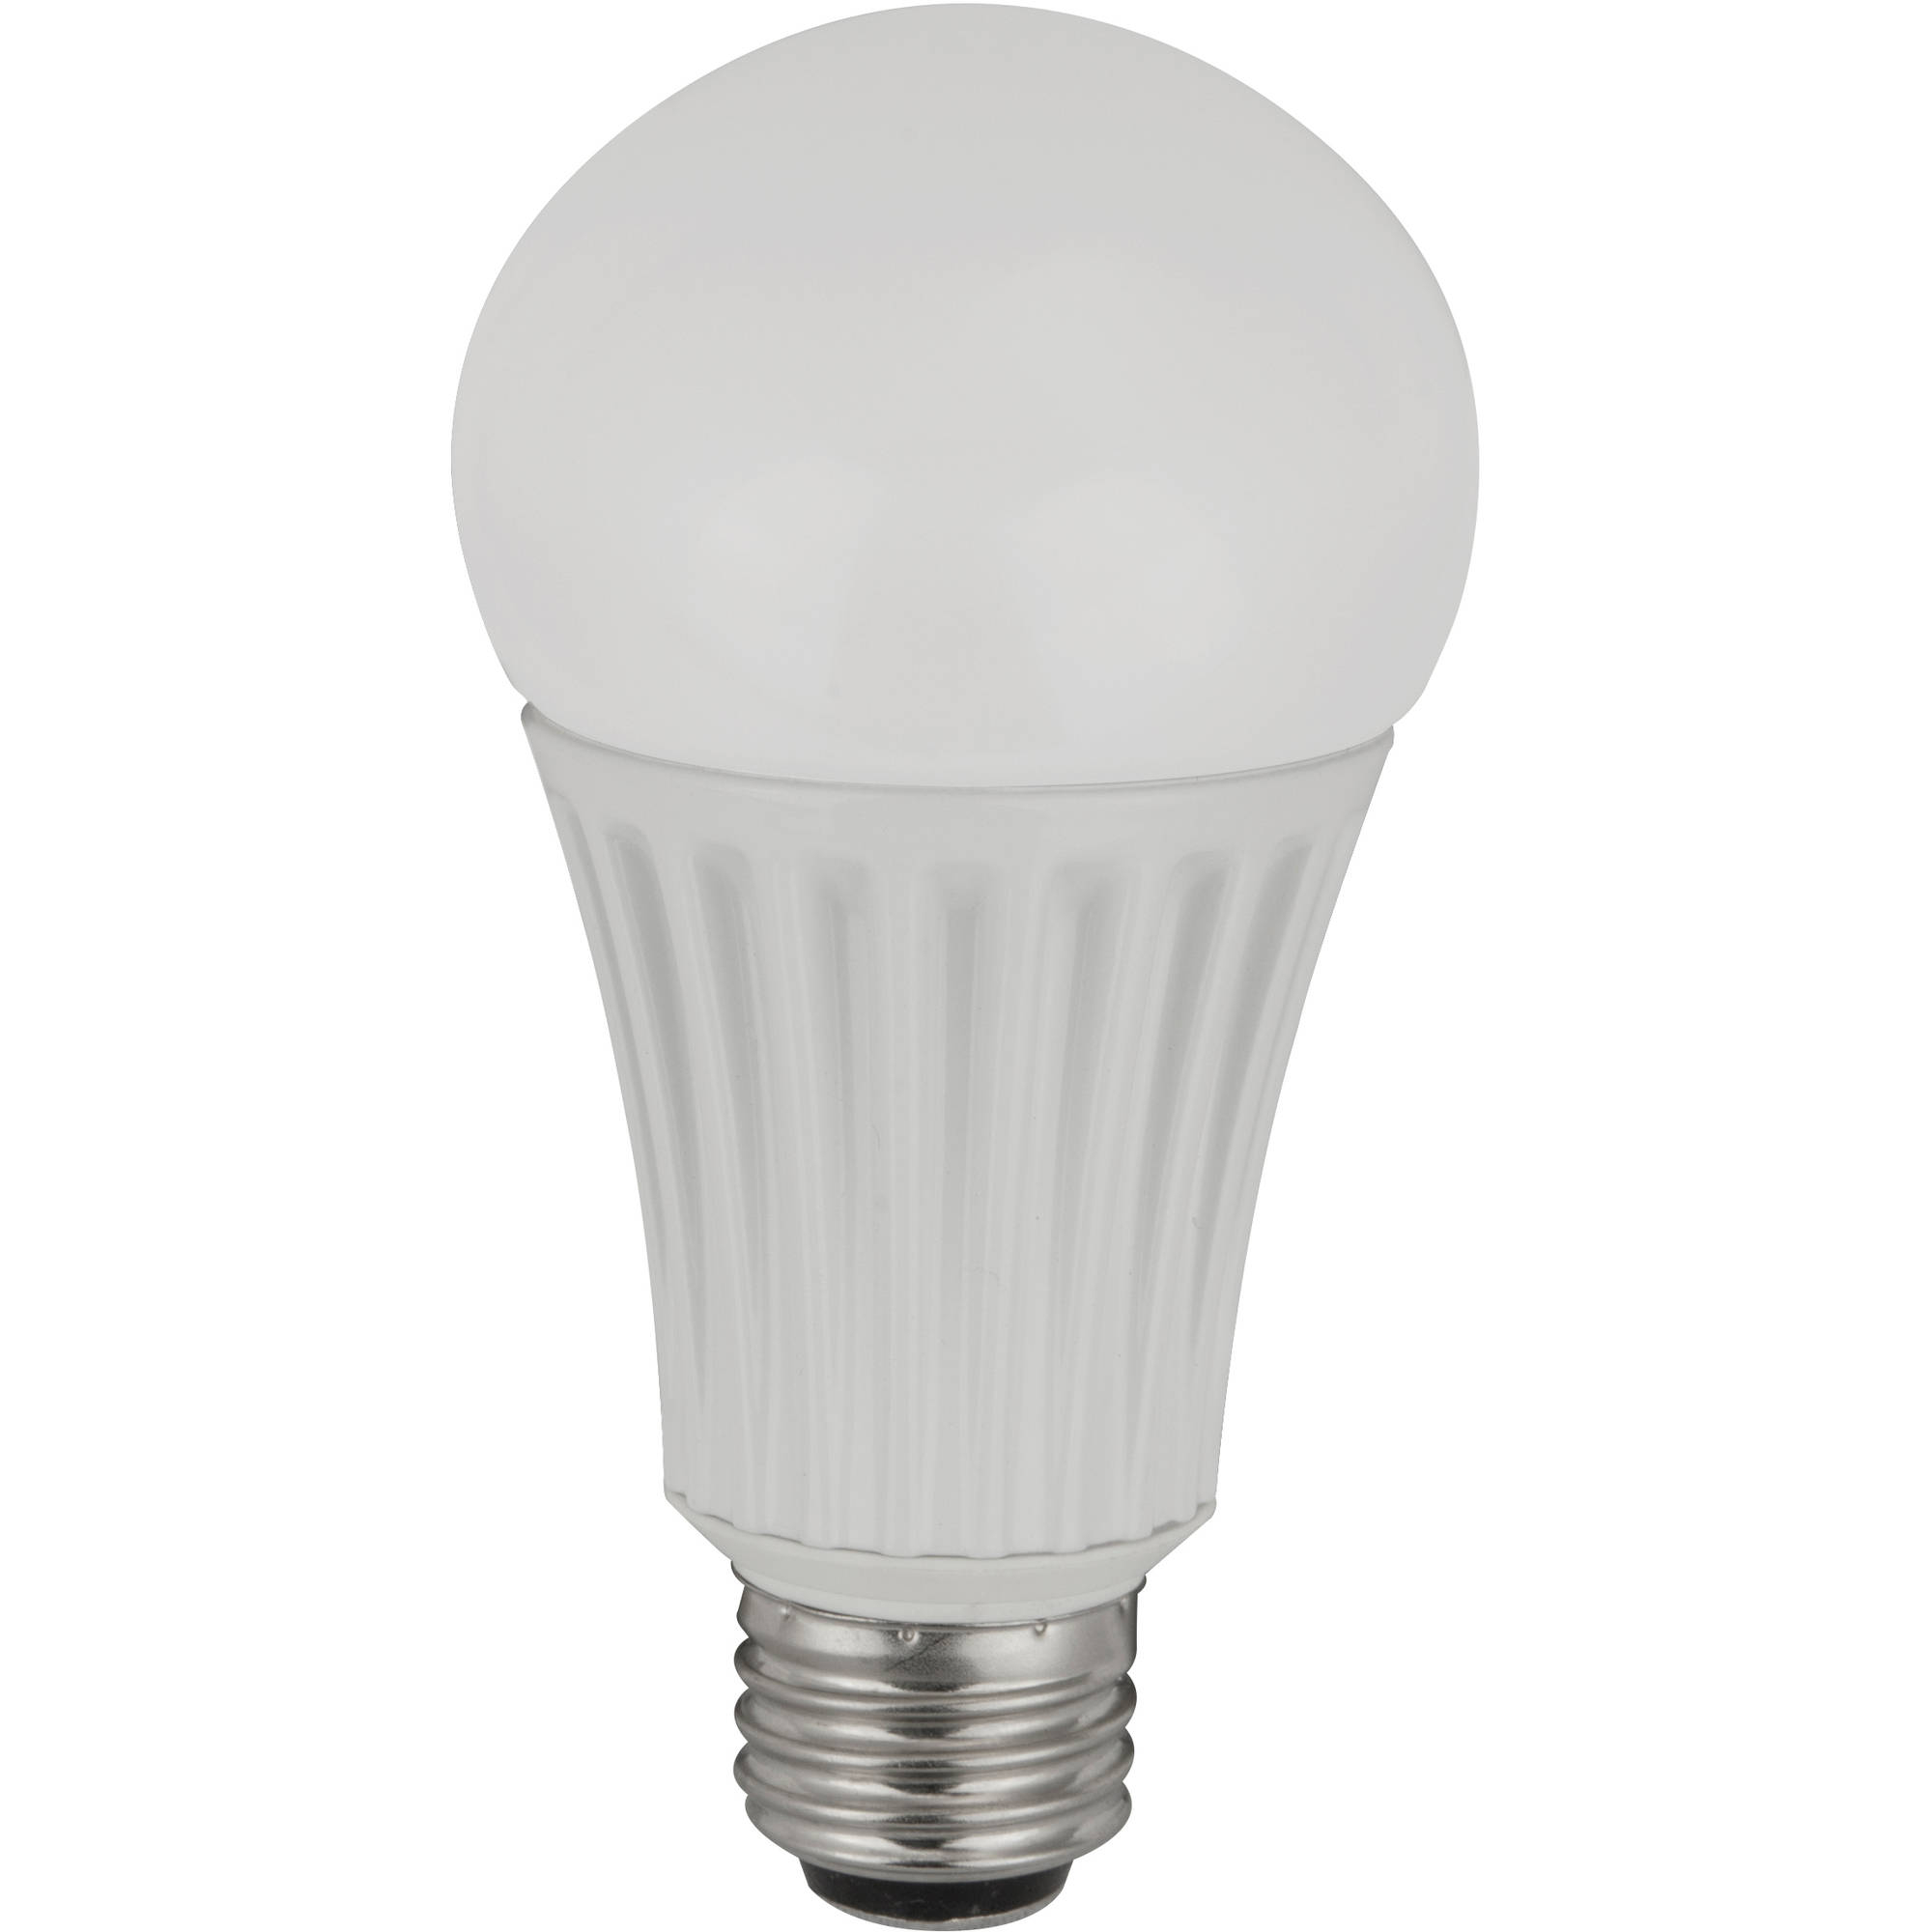 1600 lumen led light bulb